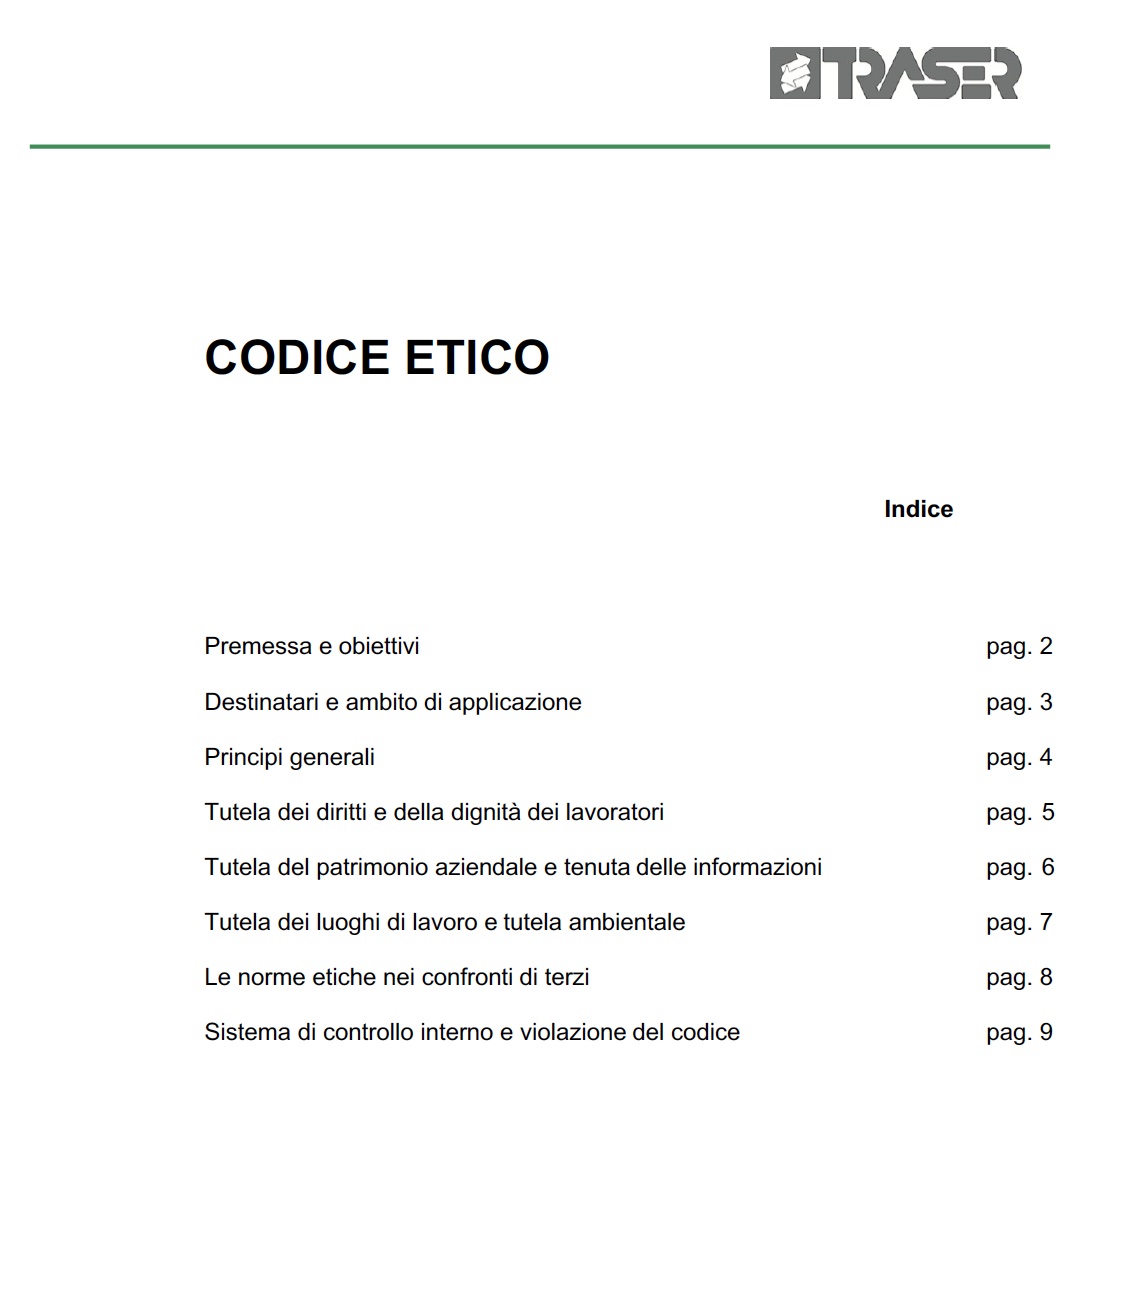 CODICE ETICO 2020